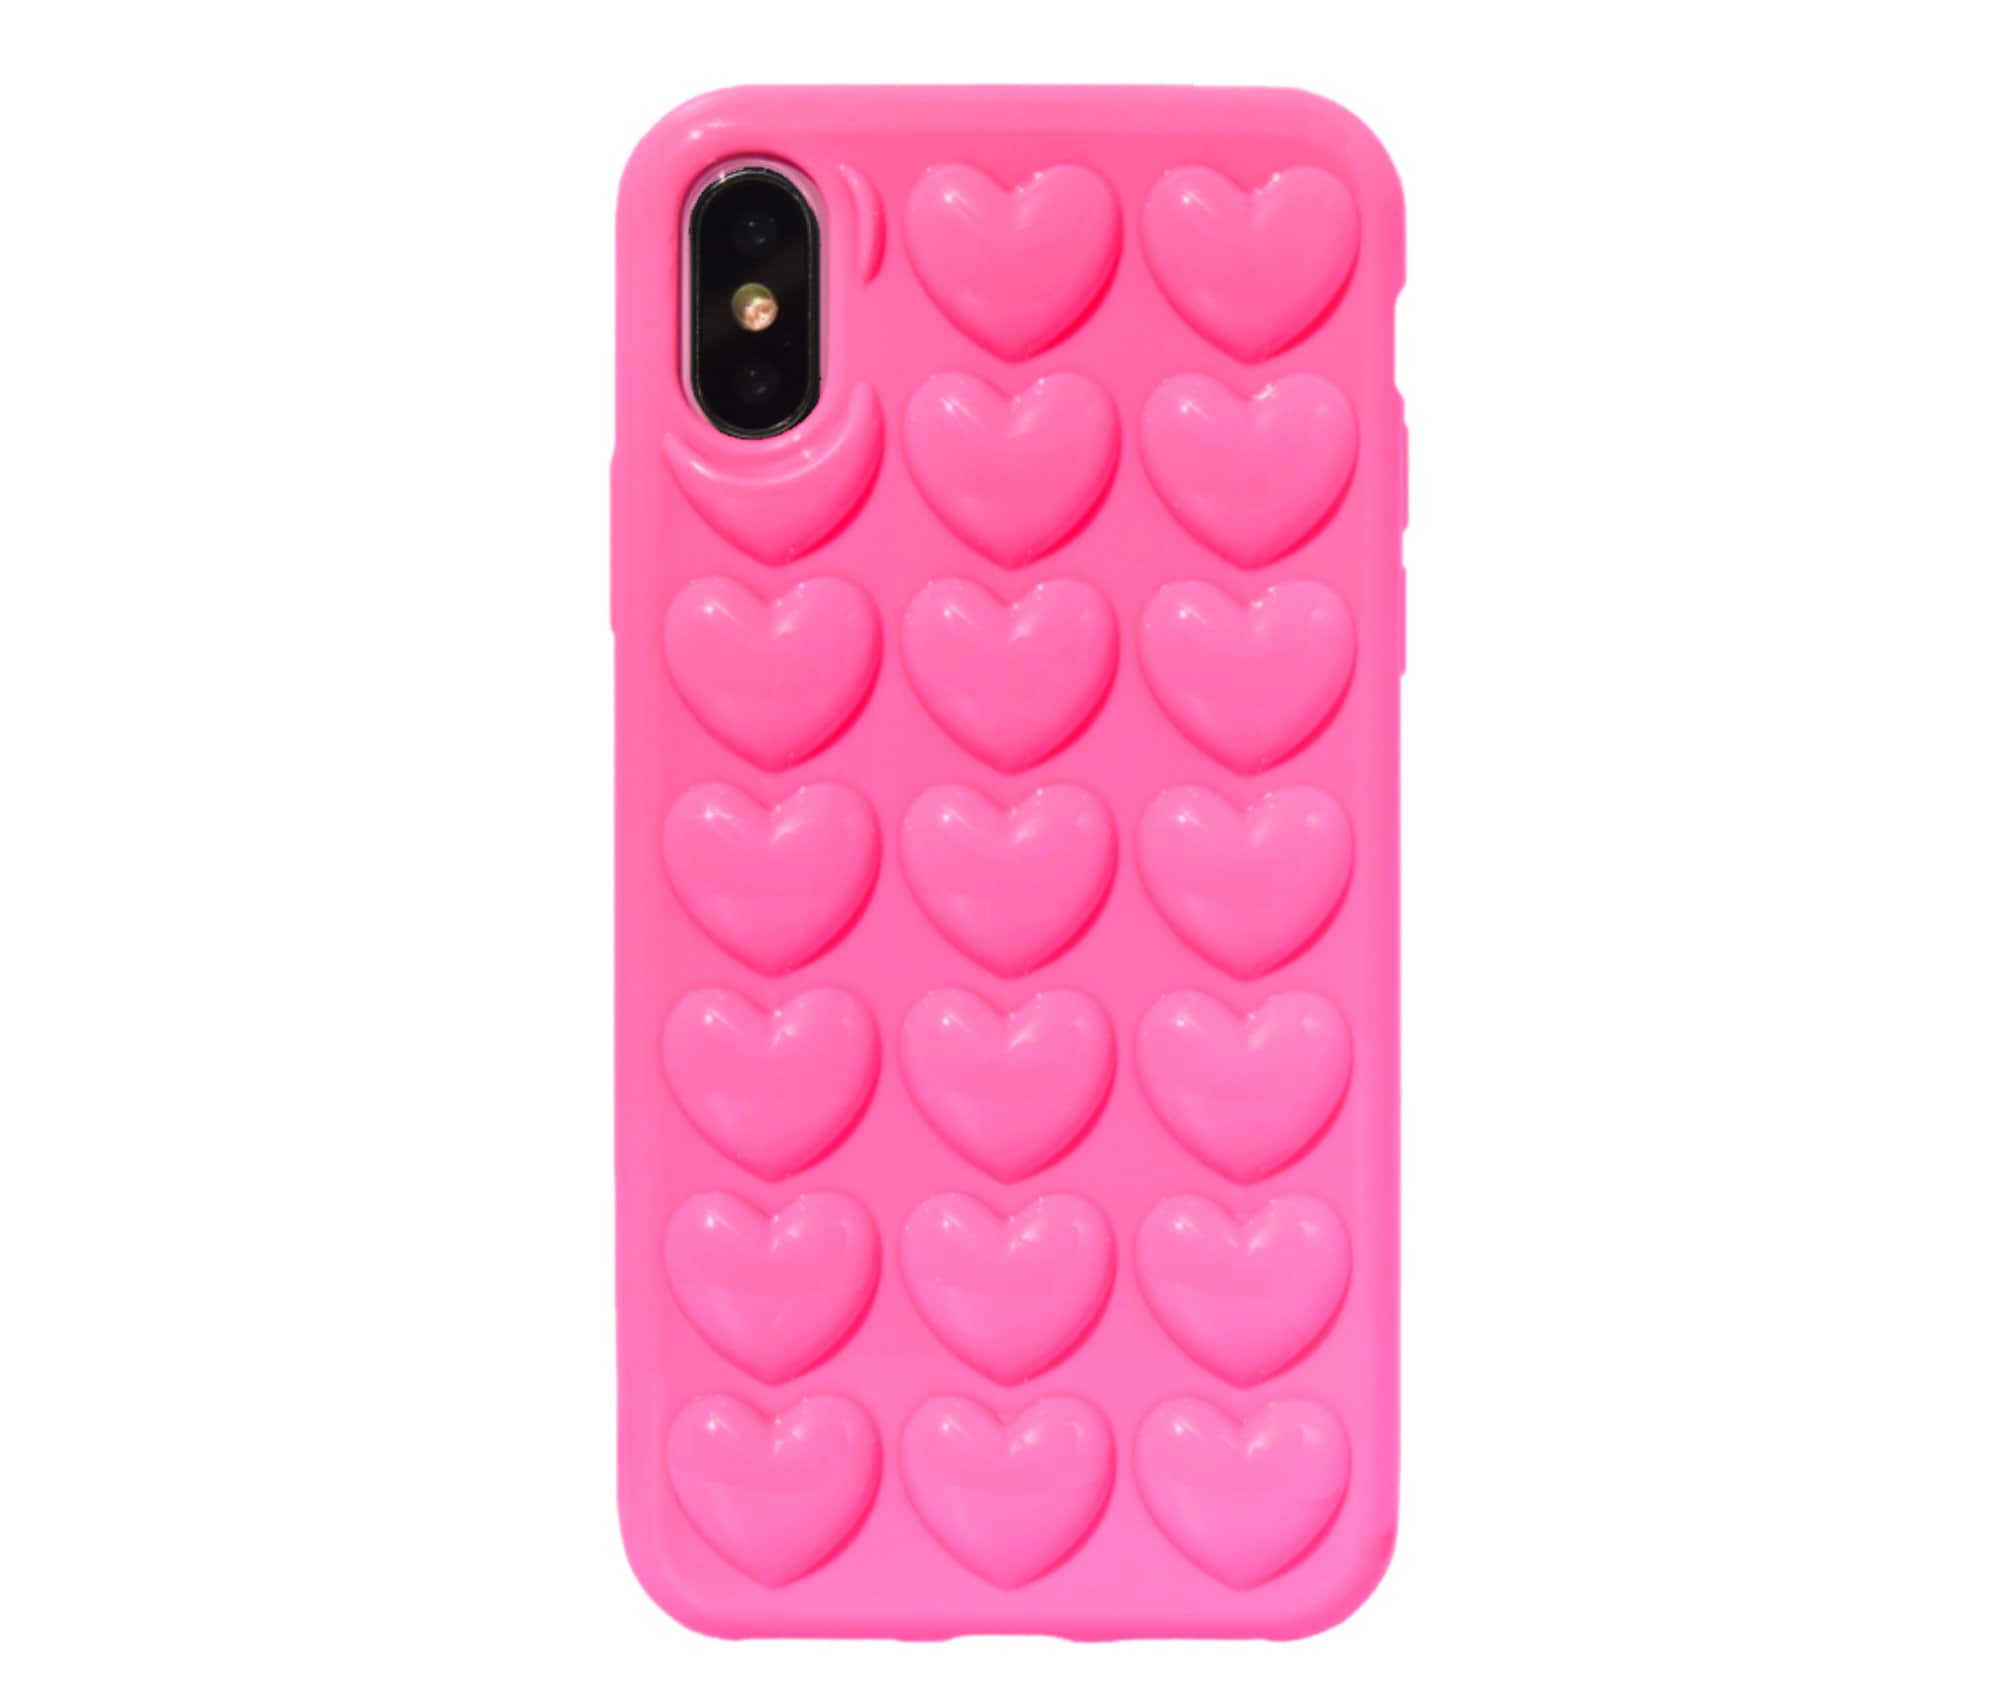 Oceaan Uitrusten Of anders 3D Heart Bubbles Hot Pink Cute Trendy Iphone XR Case Cover - Etsy